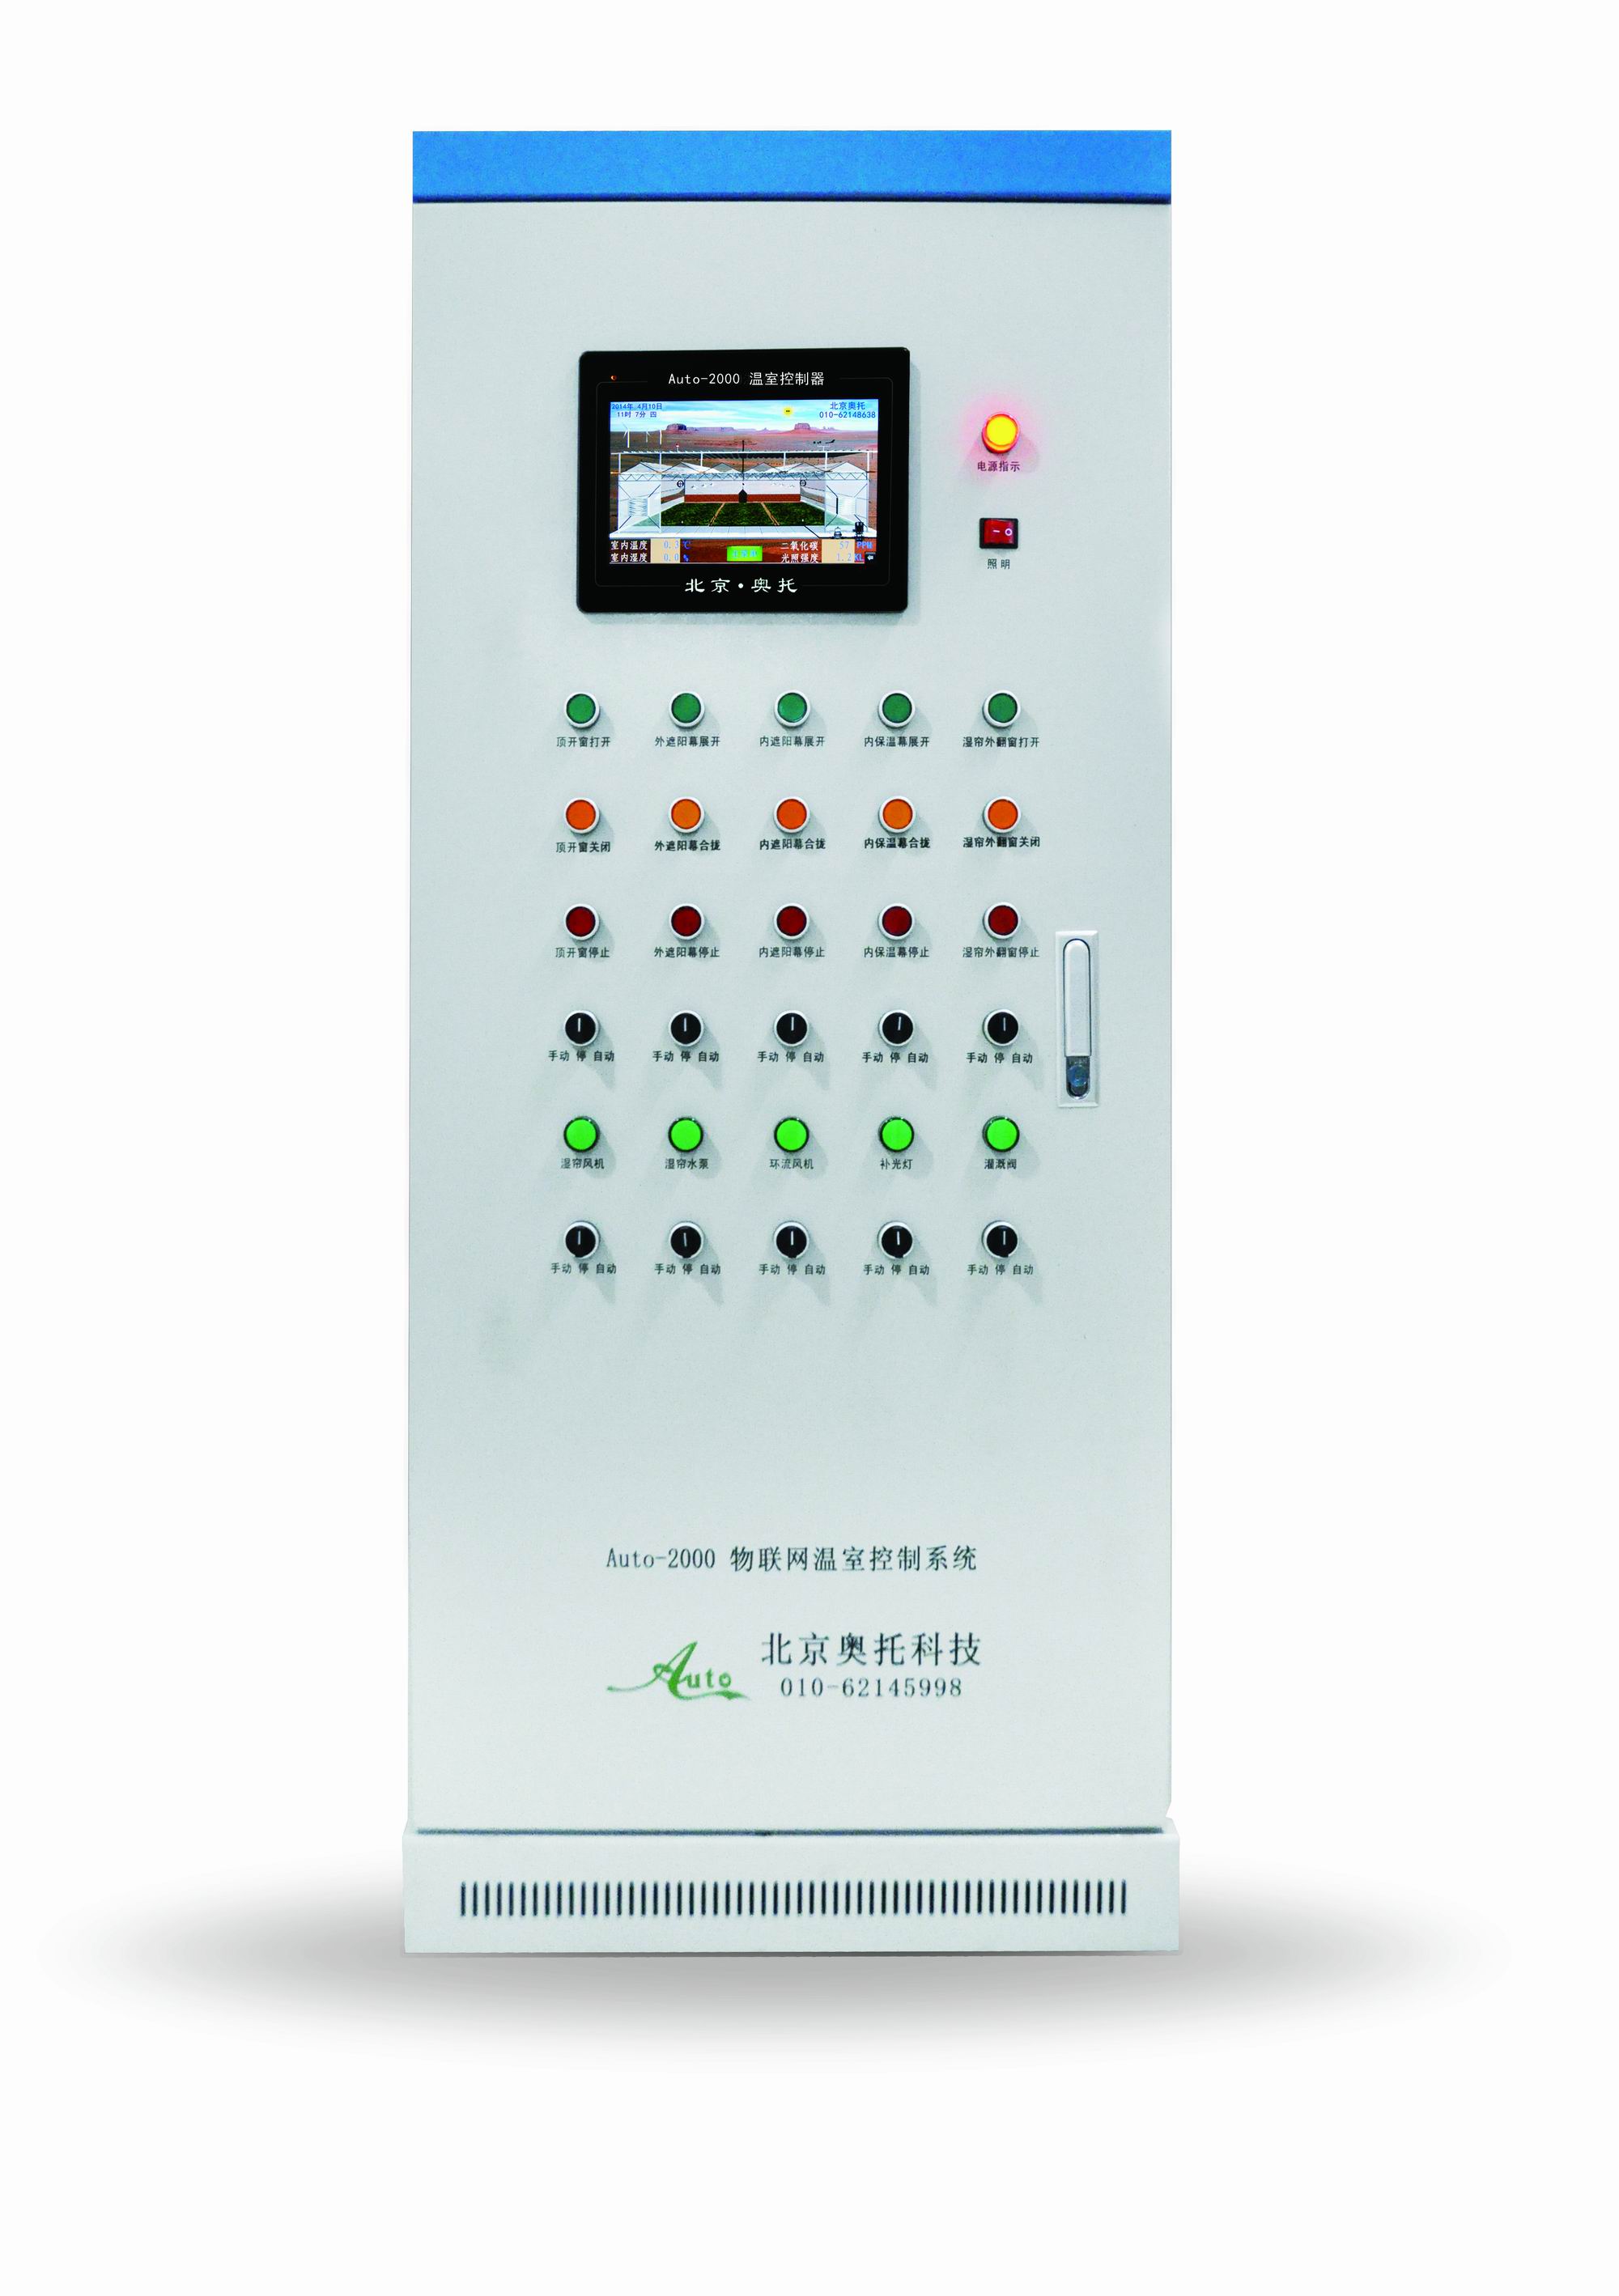 Auto-2000 物联网温室控制系统